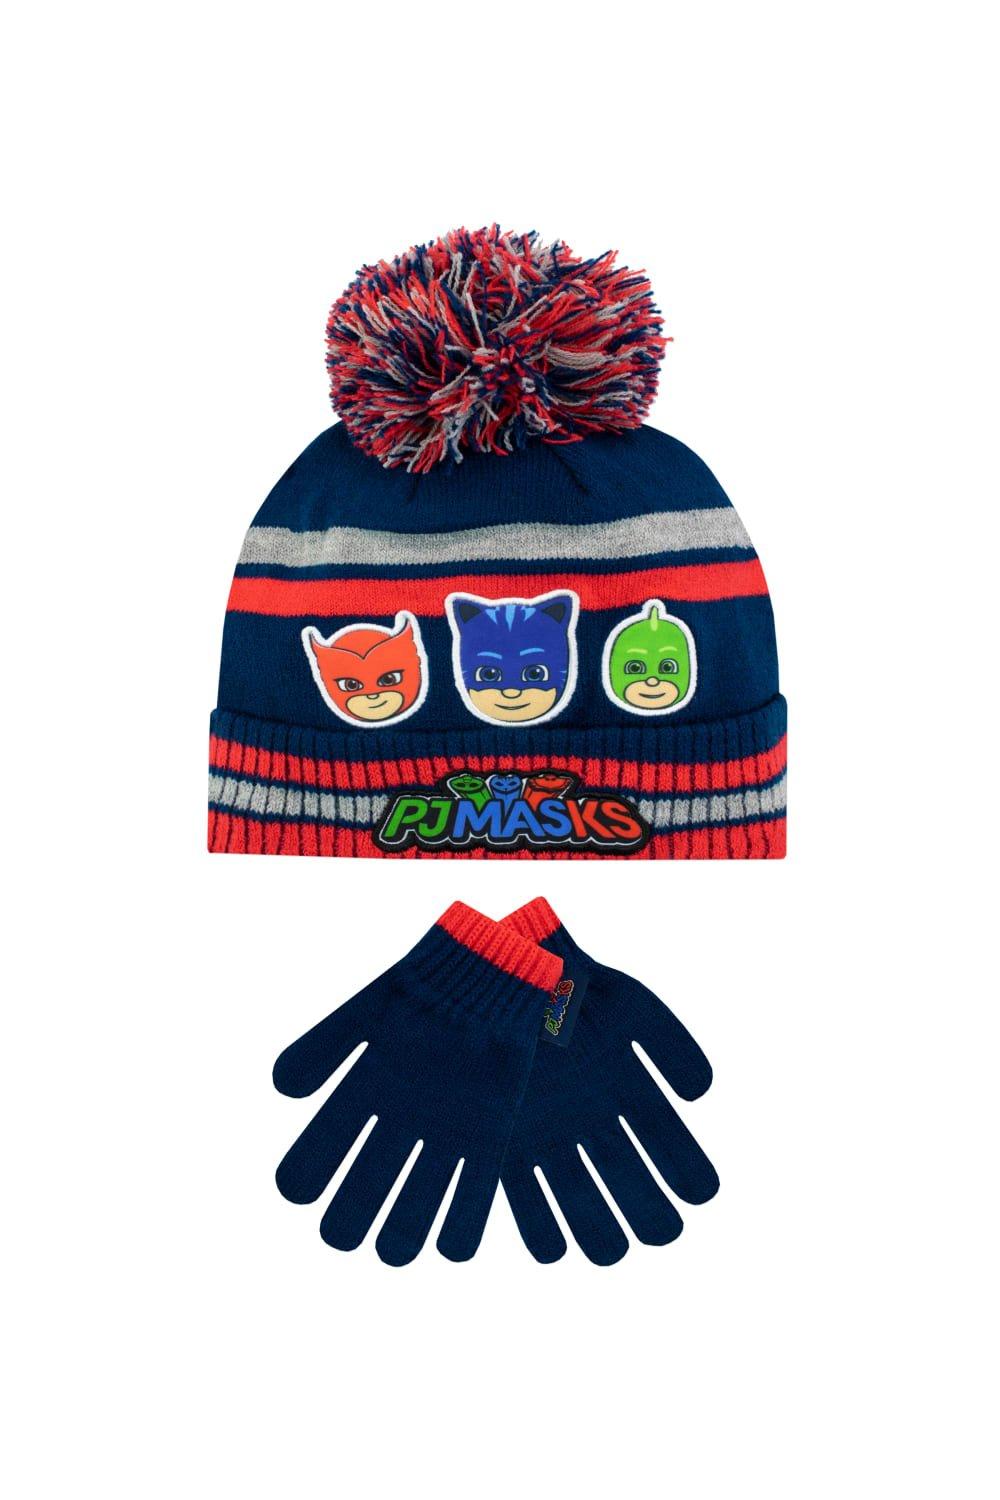 Детский комплект шапки и перчаток PJ Masks, синий чёрная шапка с пёстрым помпоном sevenext